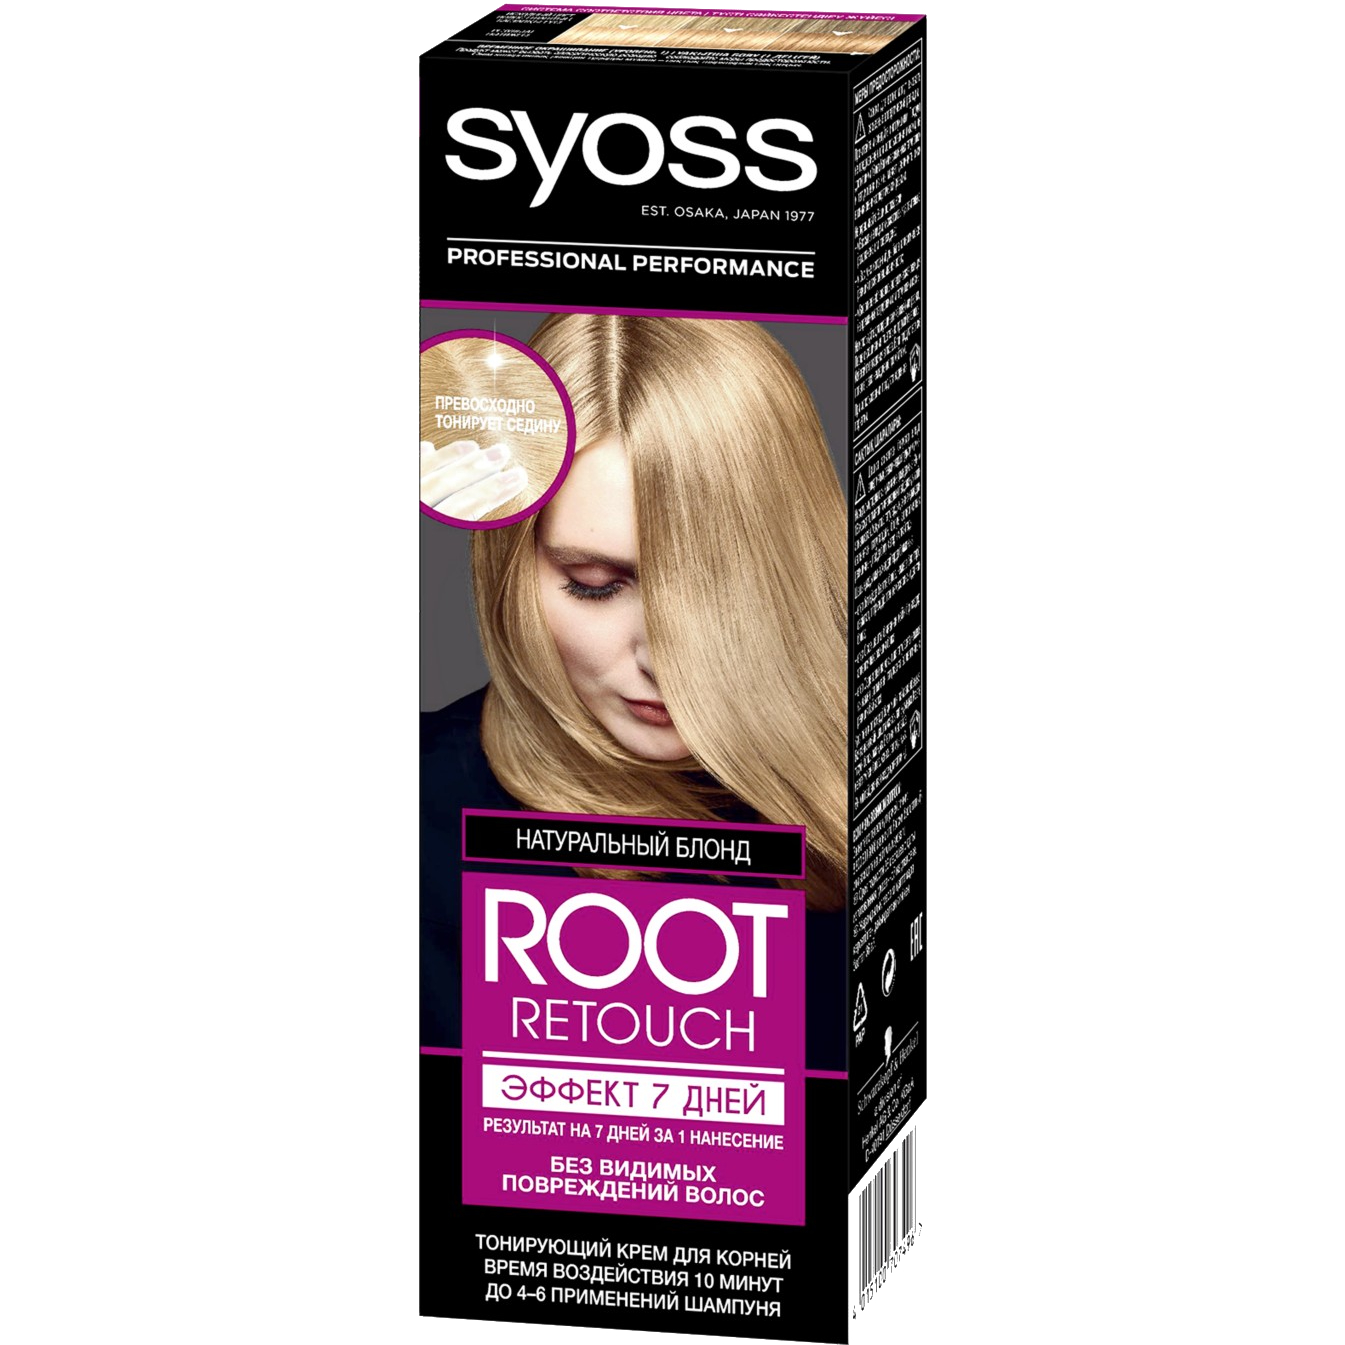 Крем для волос Syoss Root Retoucher тонирующий Эффект 7 дней оттенок 8.0 Натуральный Блонд, 60 мл